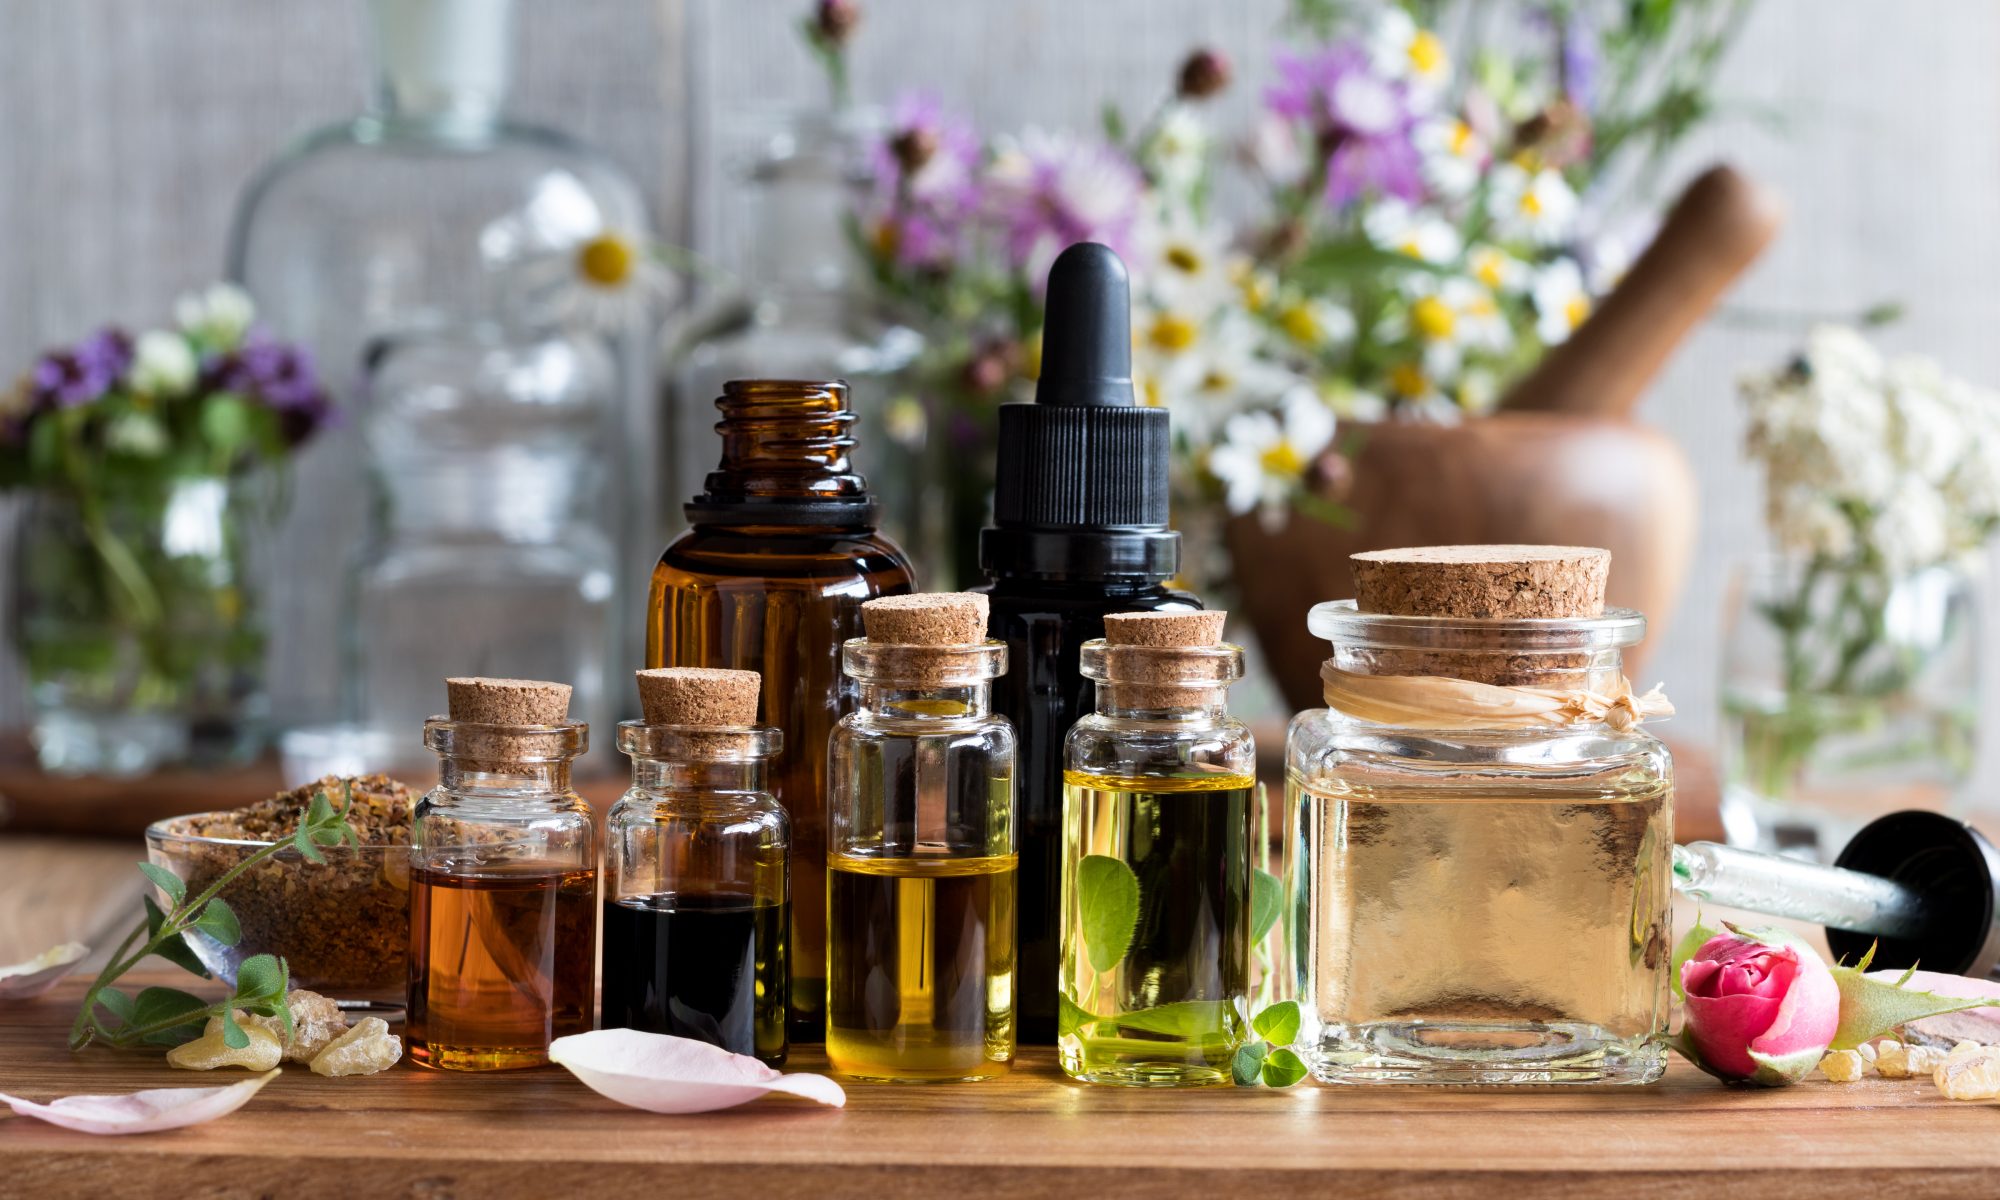 L'aromathérapie : les bienfaits des huiles essentielles au quotidien -  Christian Lénart